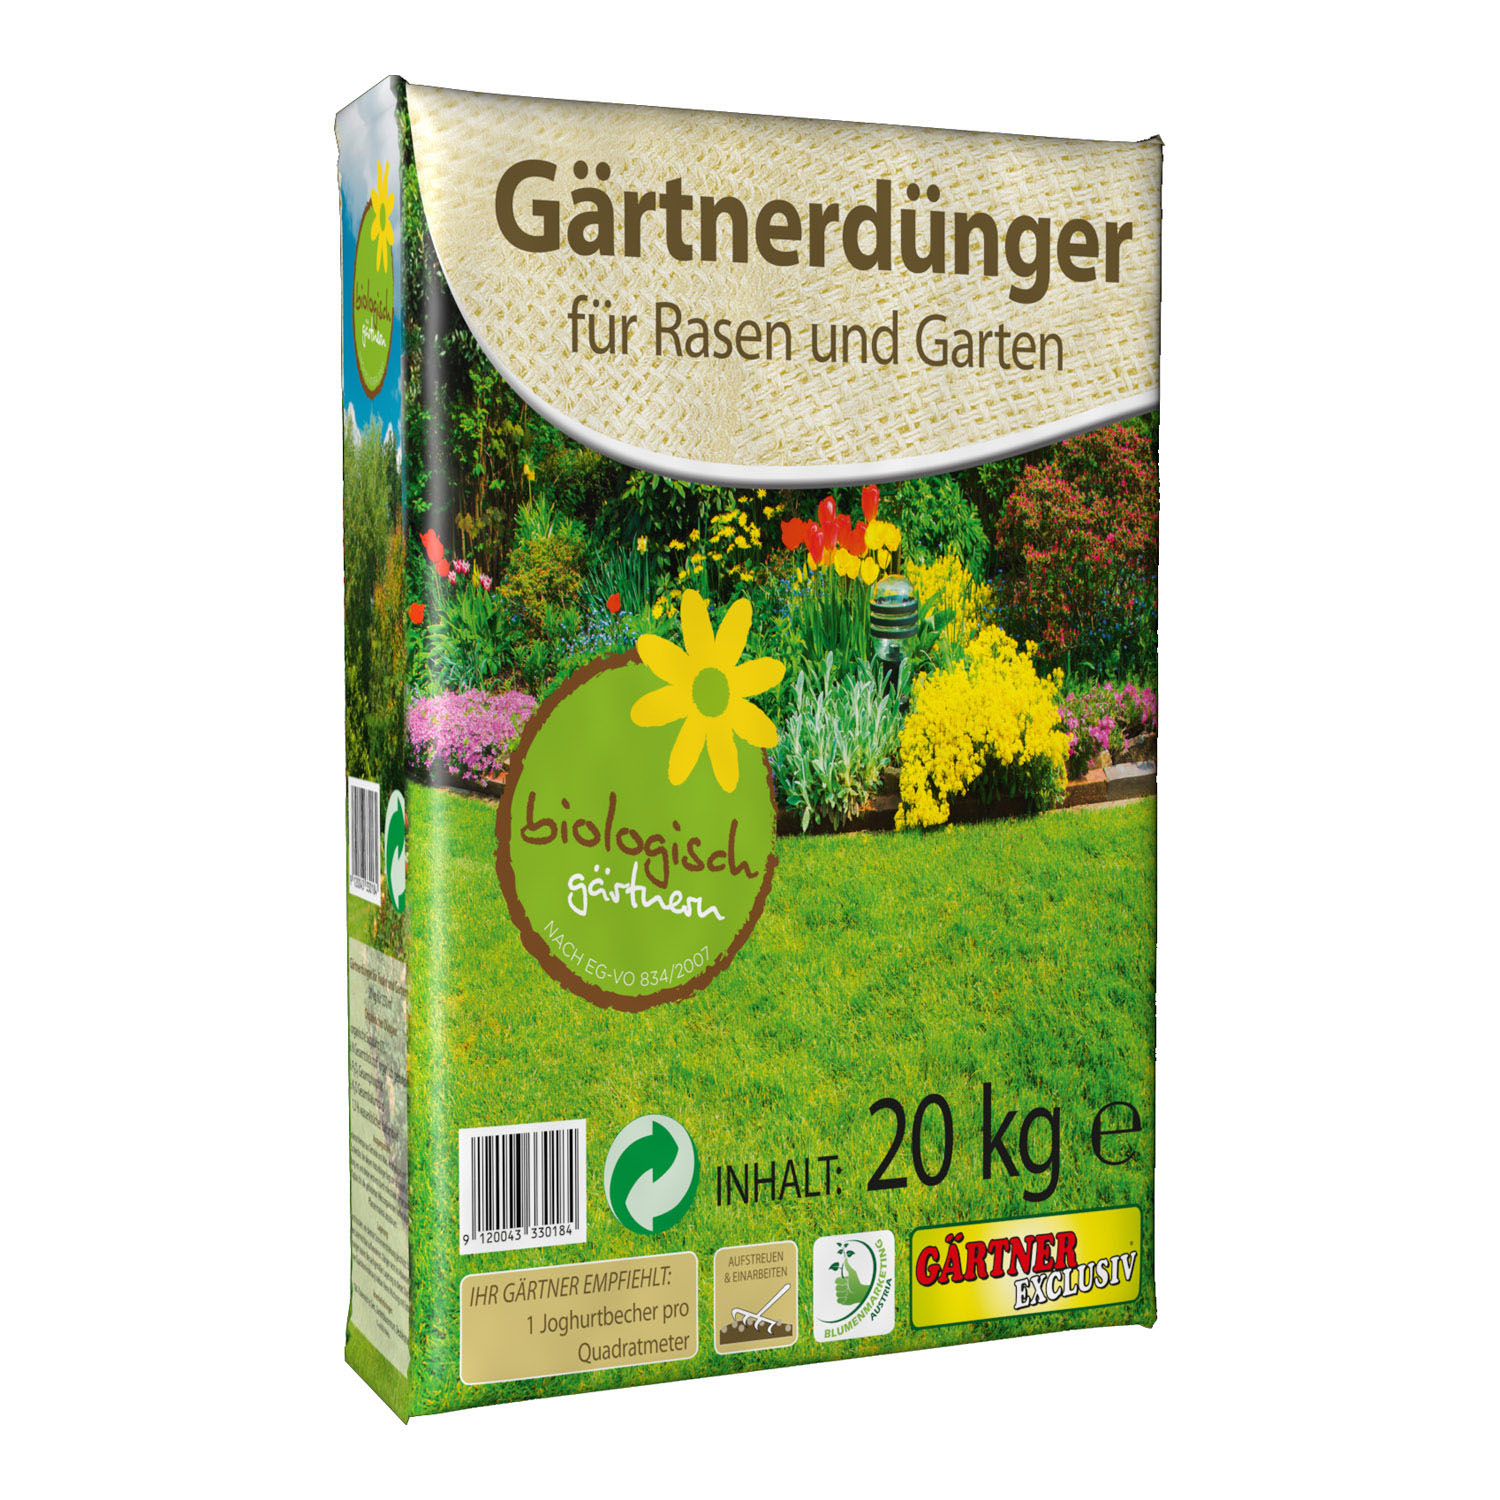 Gärtner Dünger